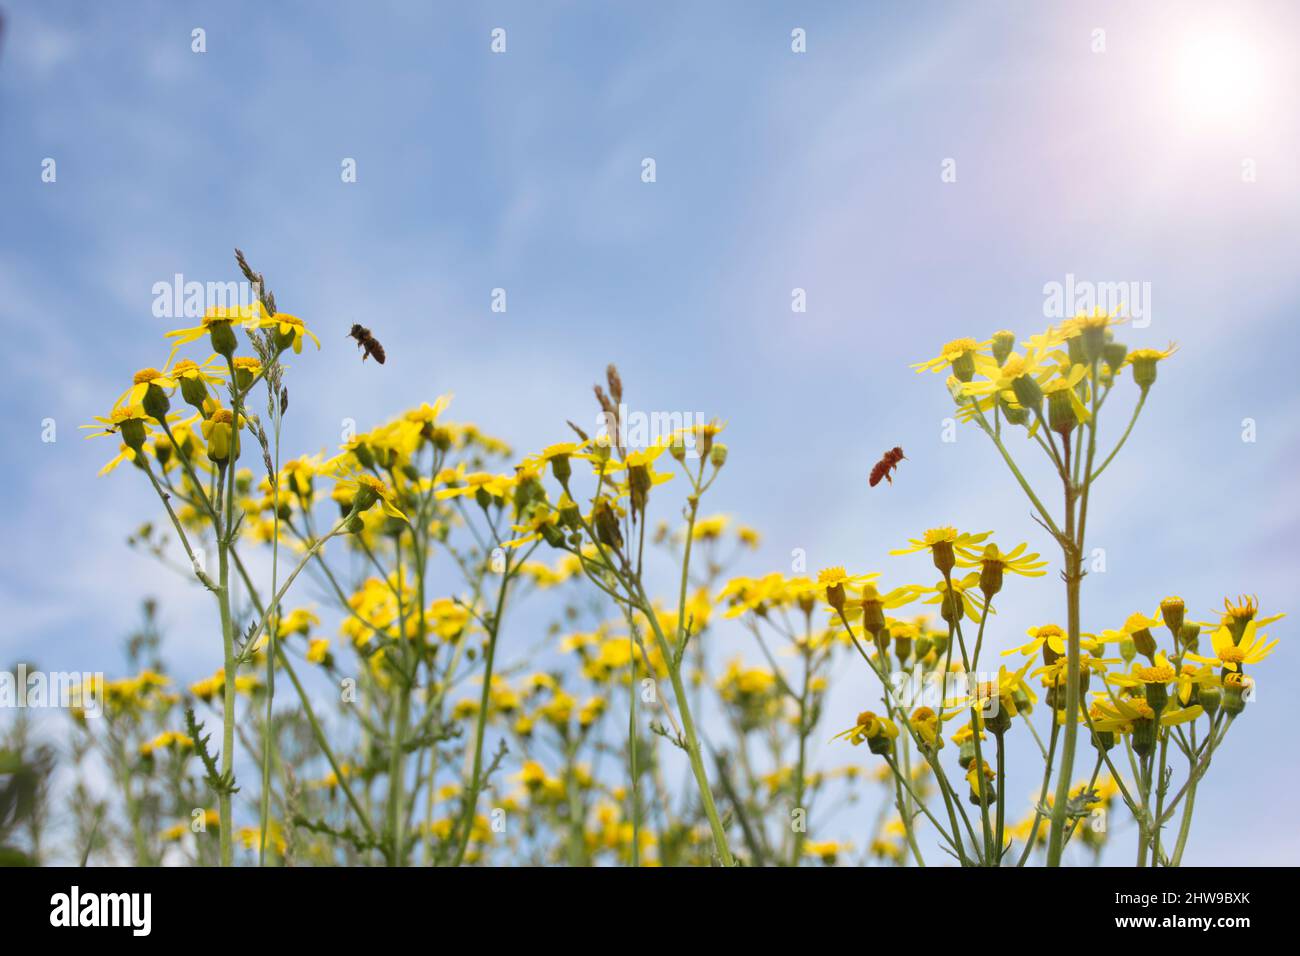 fiori selvatici margherite gialle, con api volanti, in una giornata di sole Foto Stock